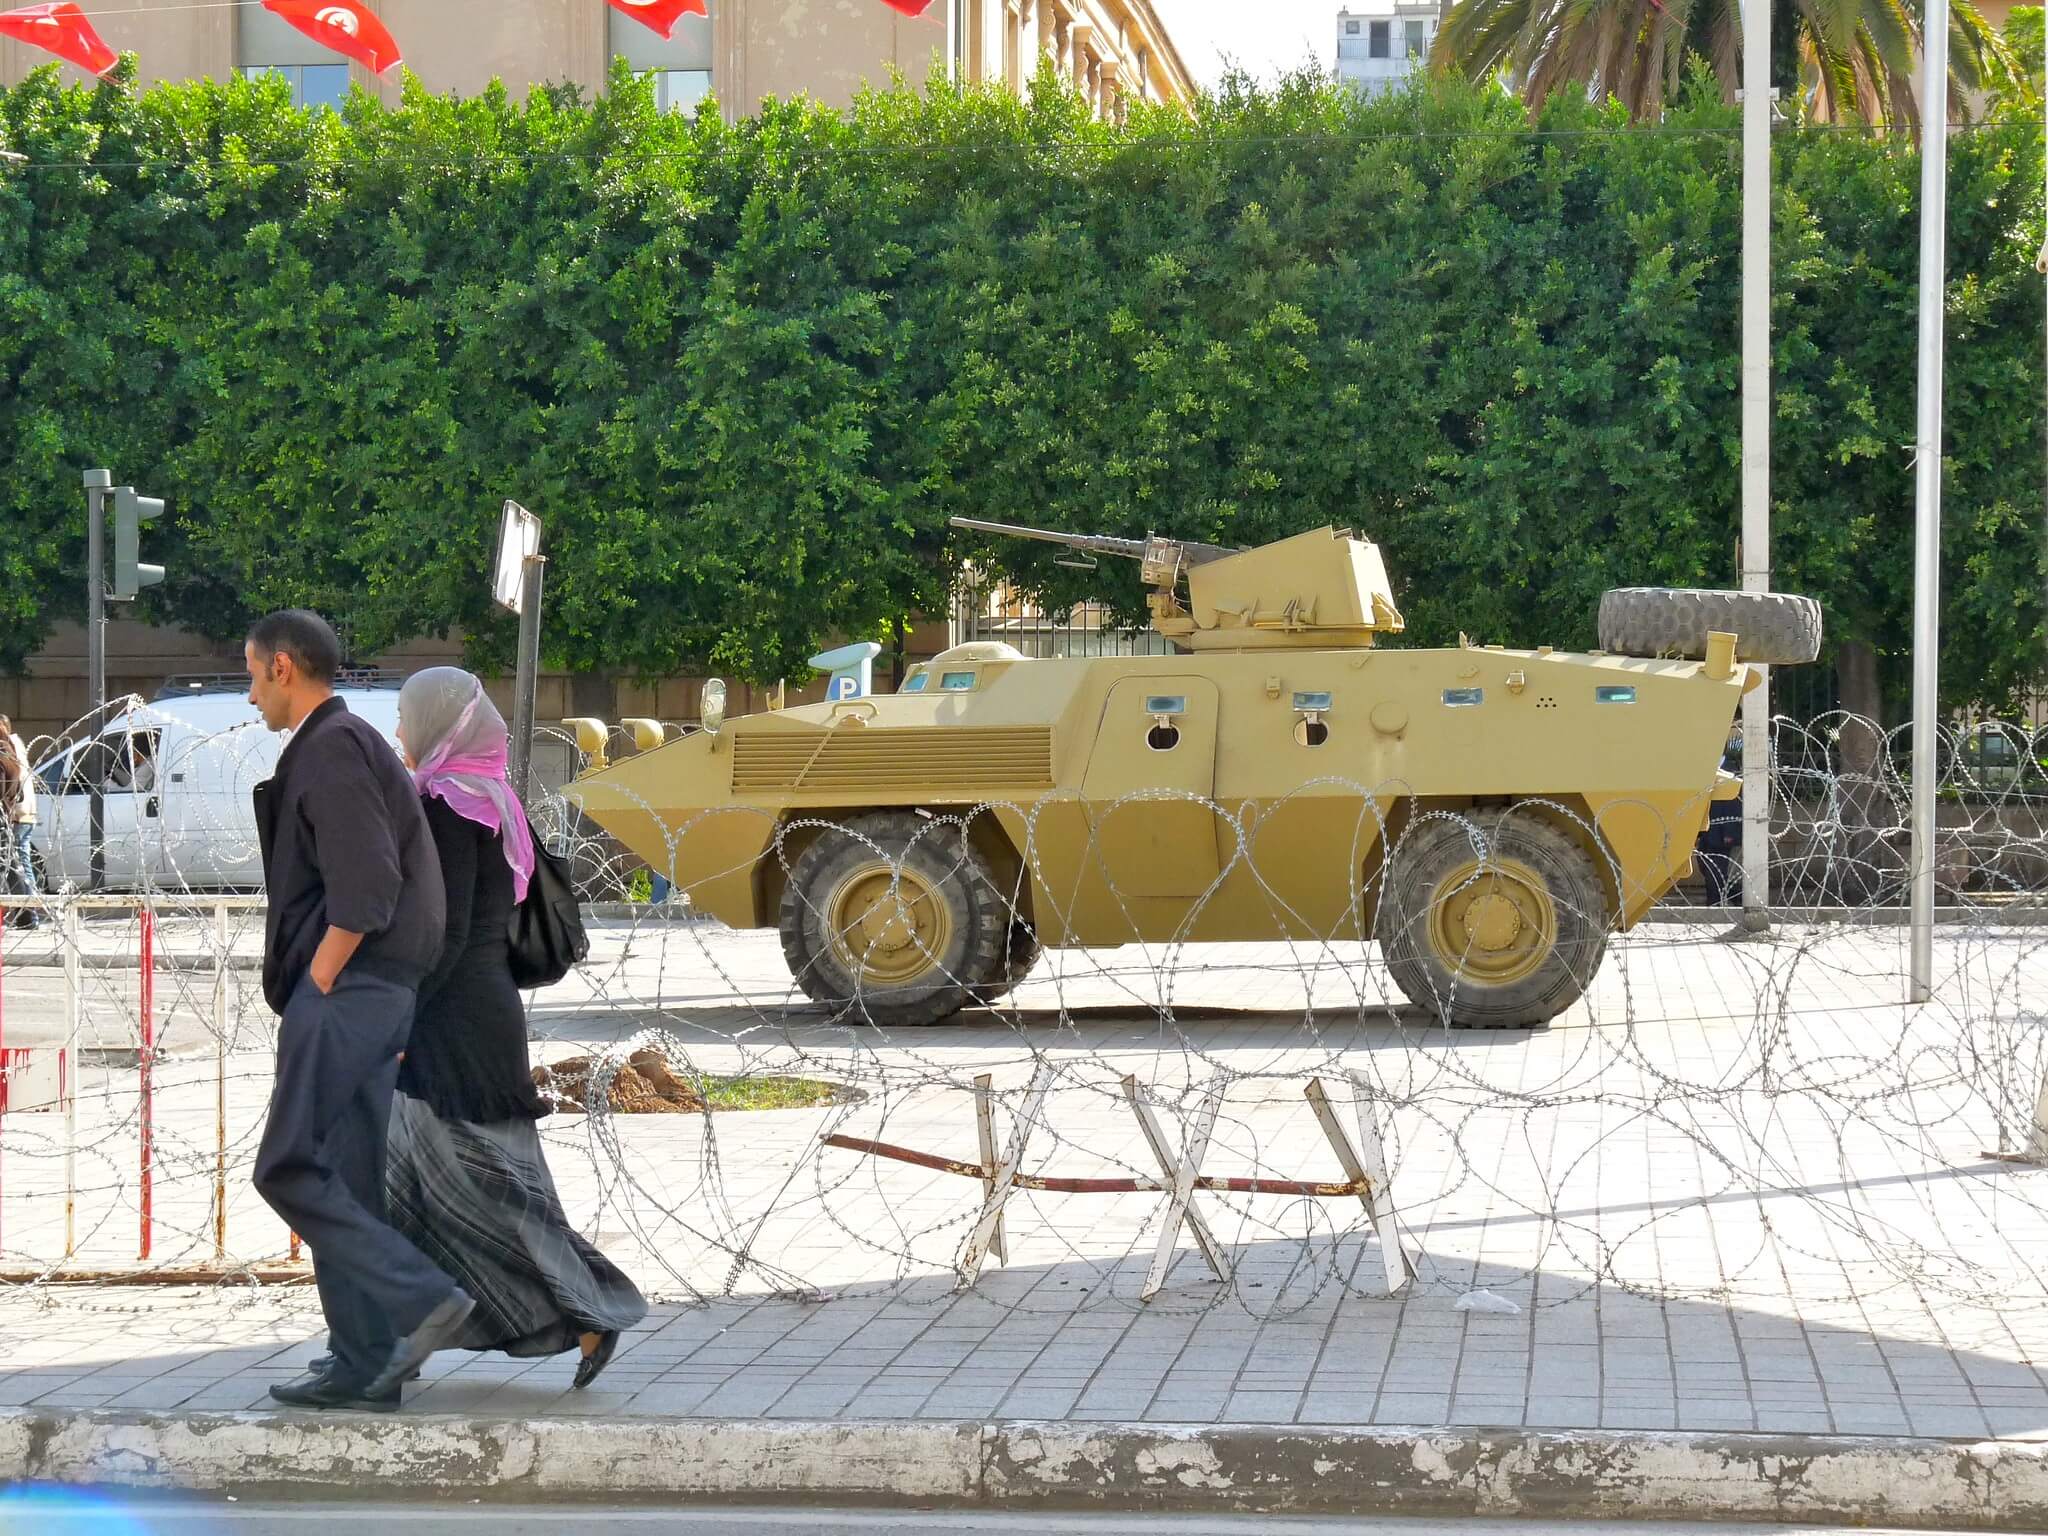 Aarts - Tunesië tijdens de verkiezingen in oktober 2011. Stefan de Vries - Flickr